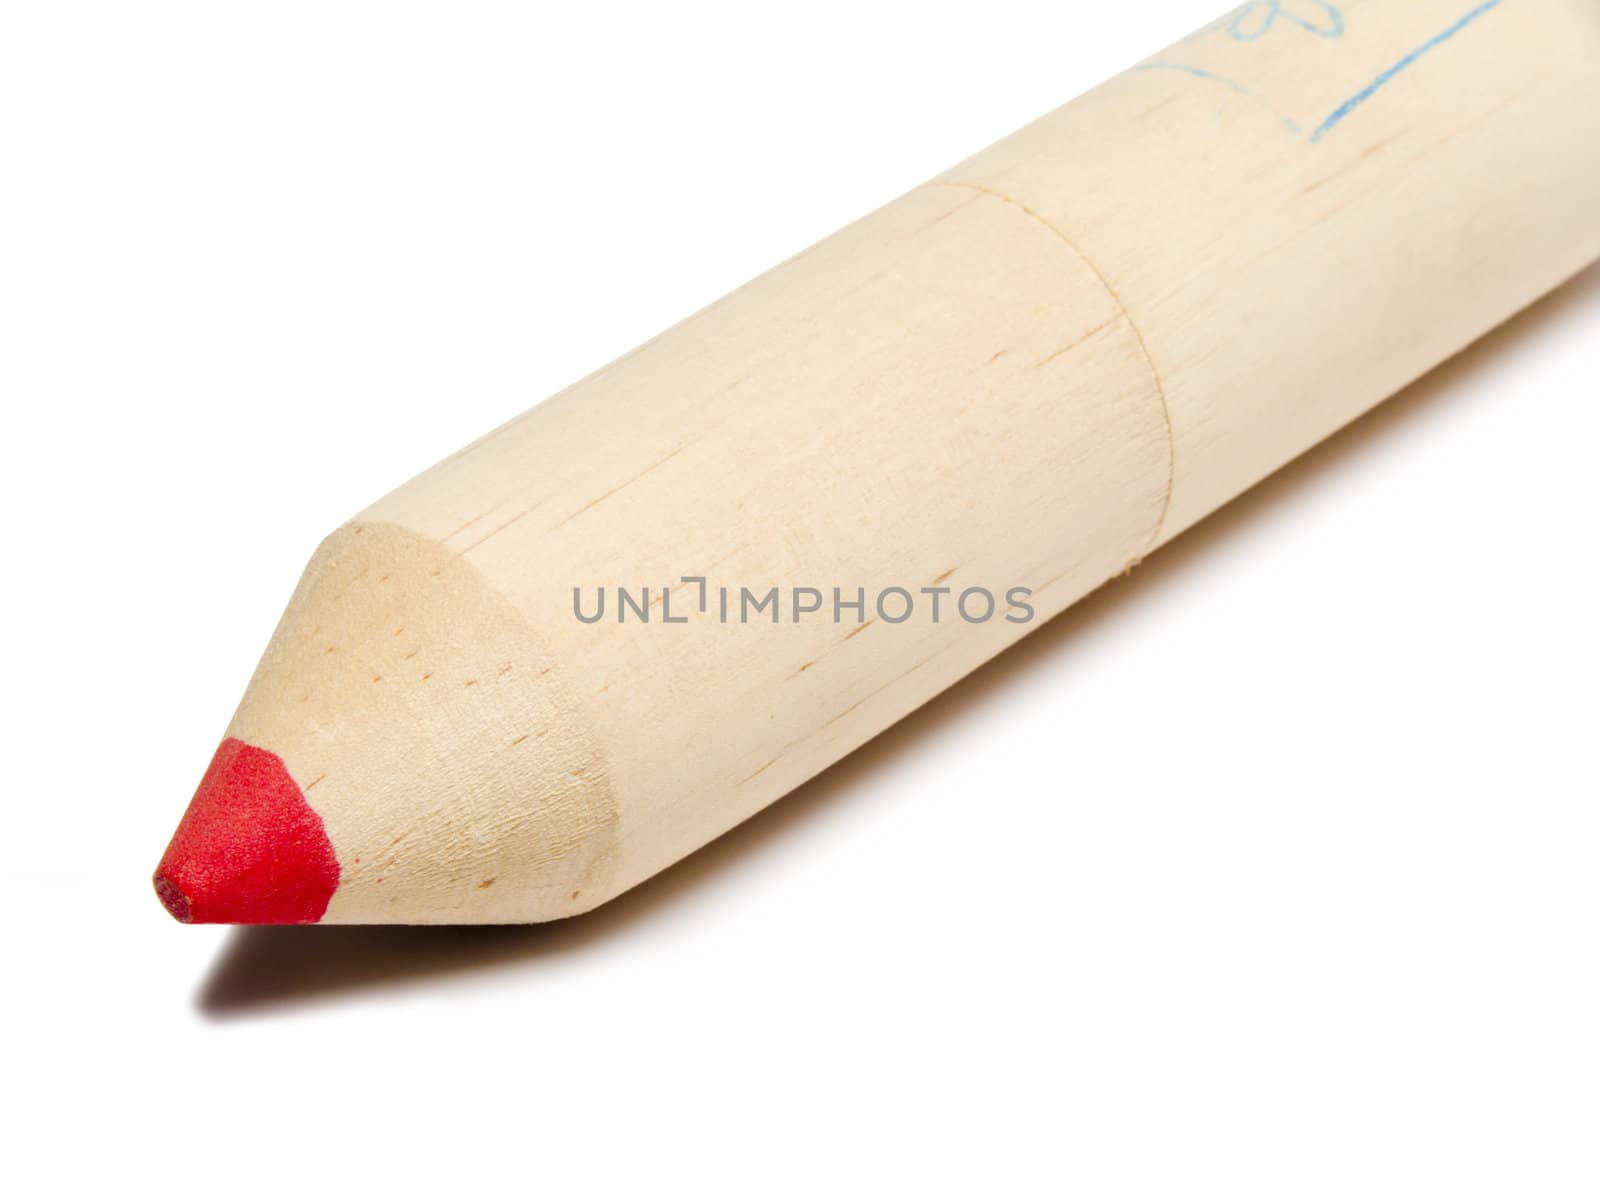 Closeup of a red pencil